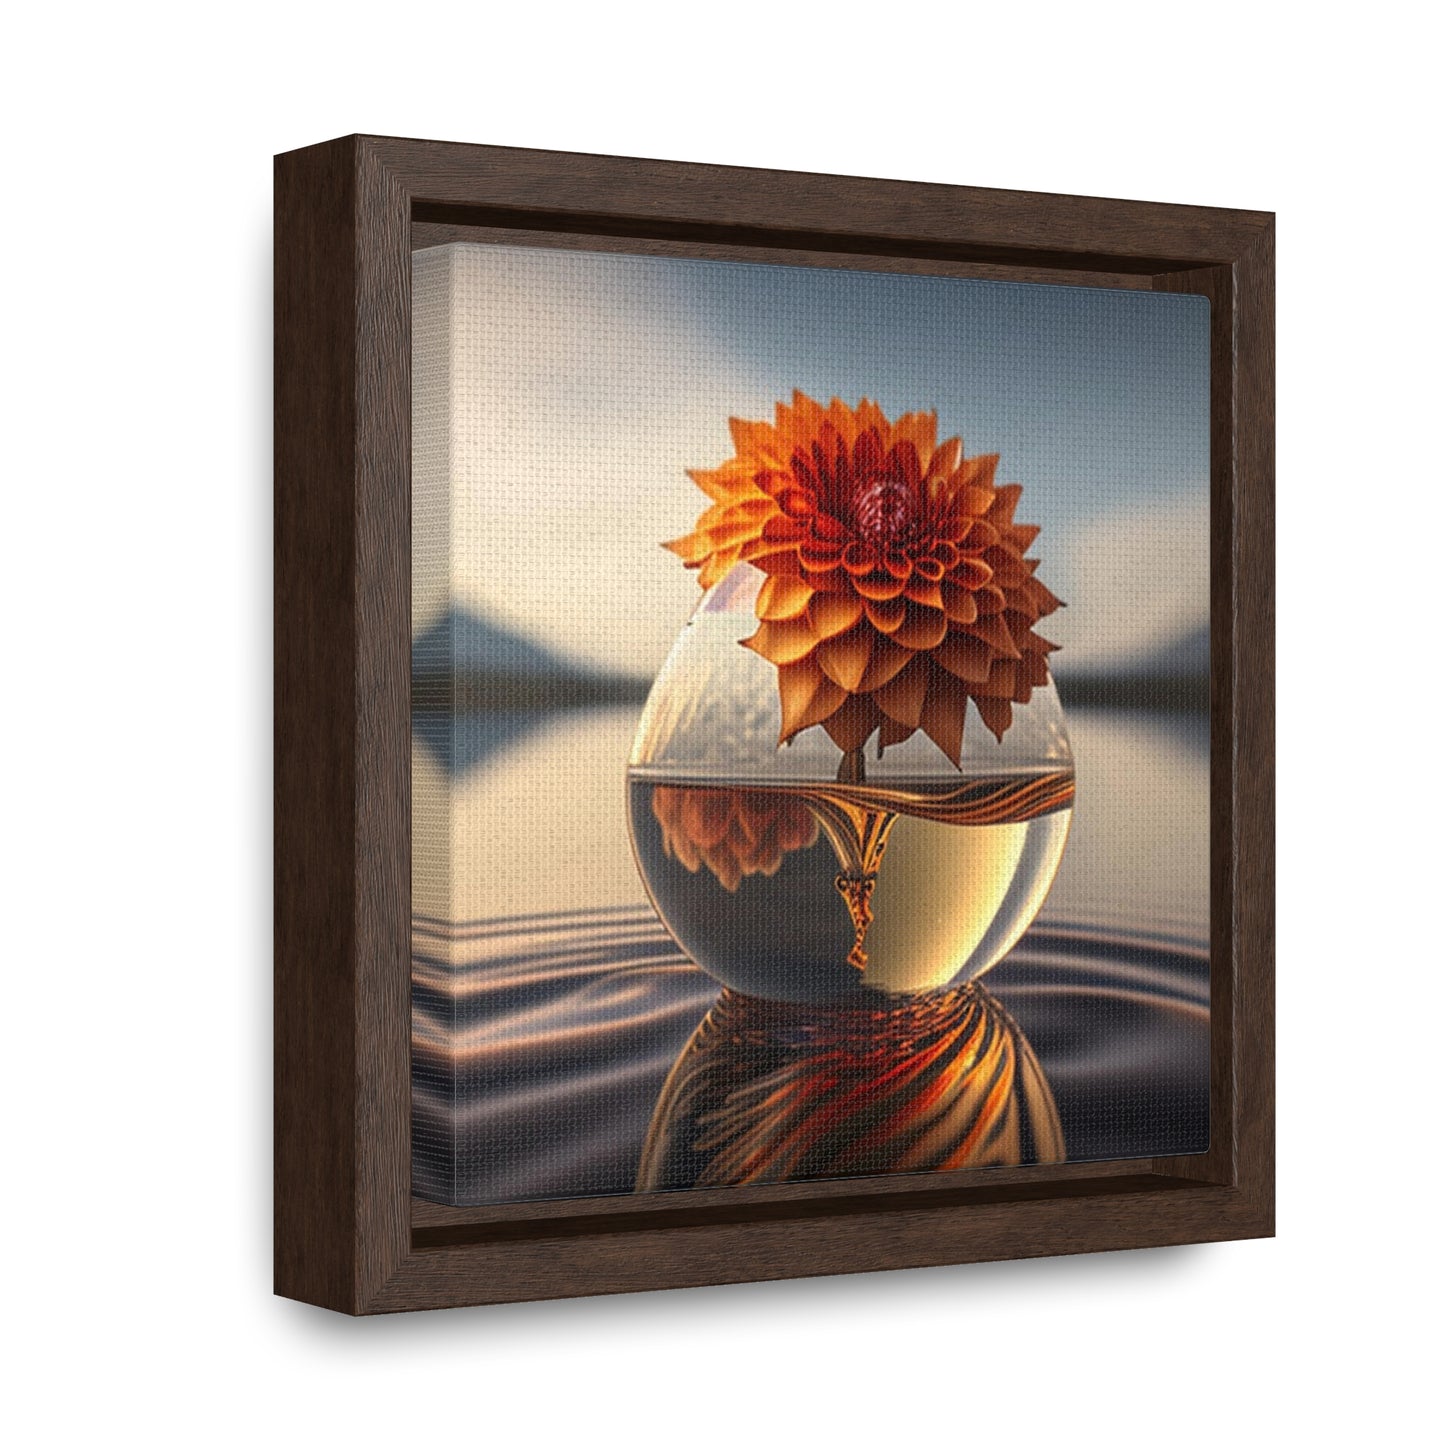 Gallery Canvas Wraps, Square Frame Dahlia Orange 1